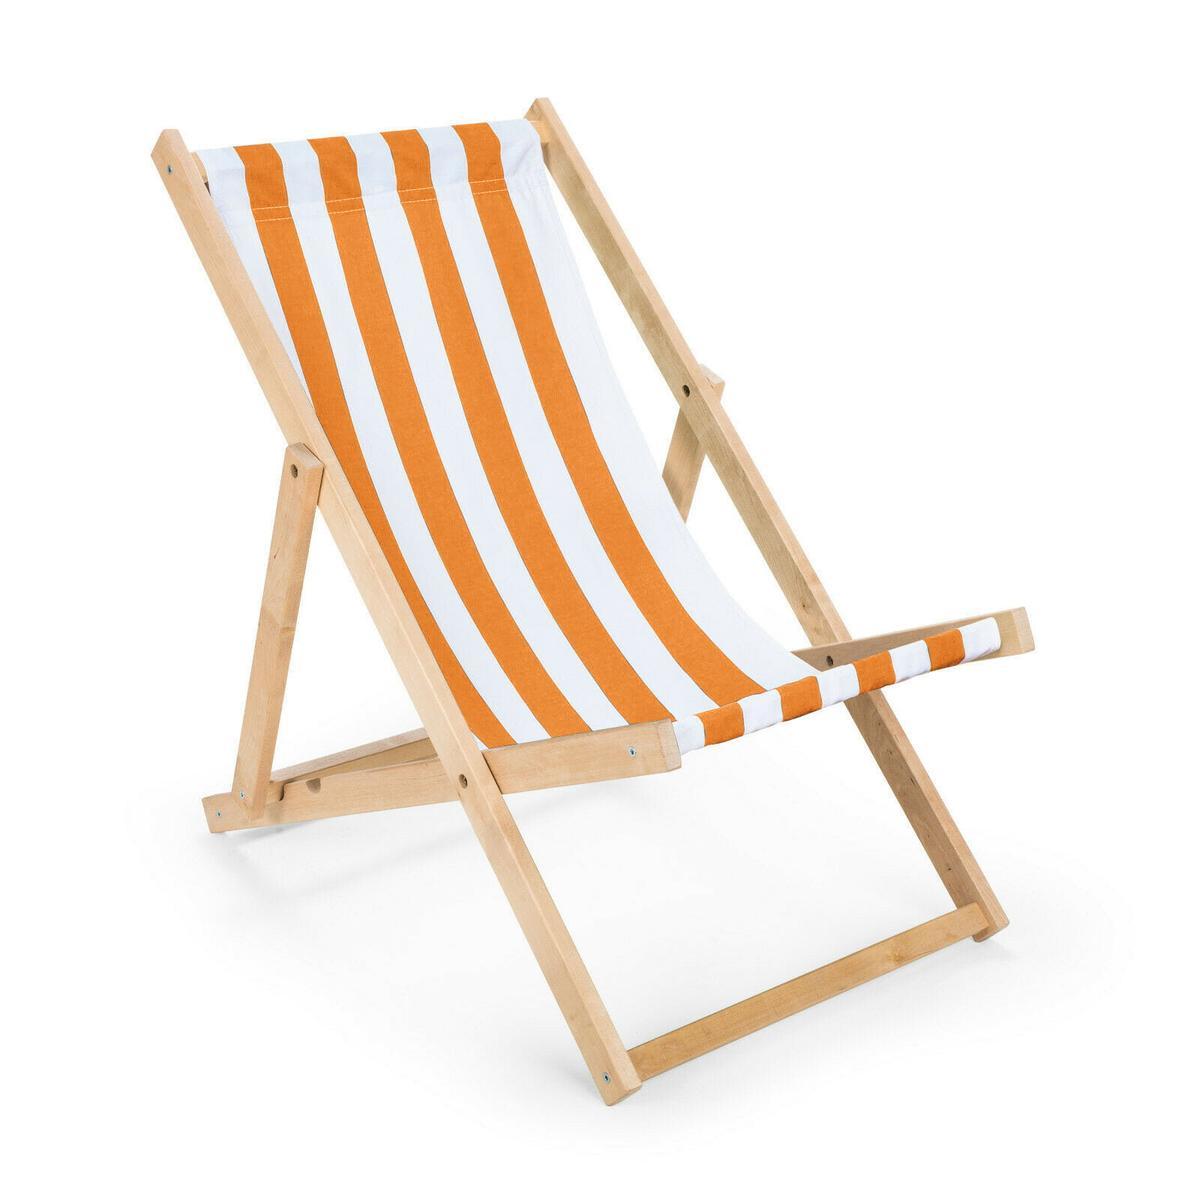 Leżak drewniany 47x112 cm ogrodowy plażowy do ogrodu pasy biało-pomarańczowe 0 Full Screen